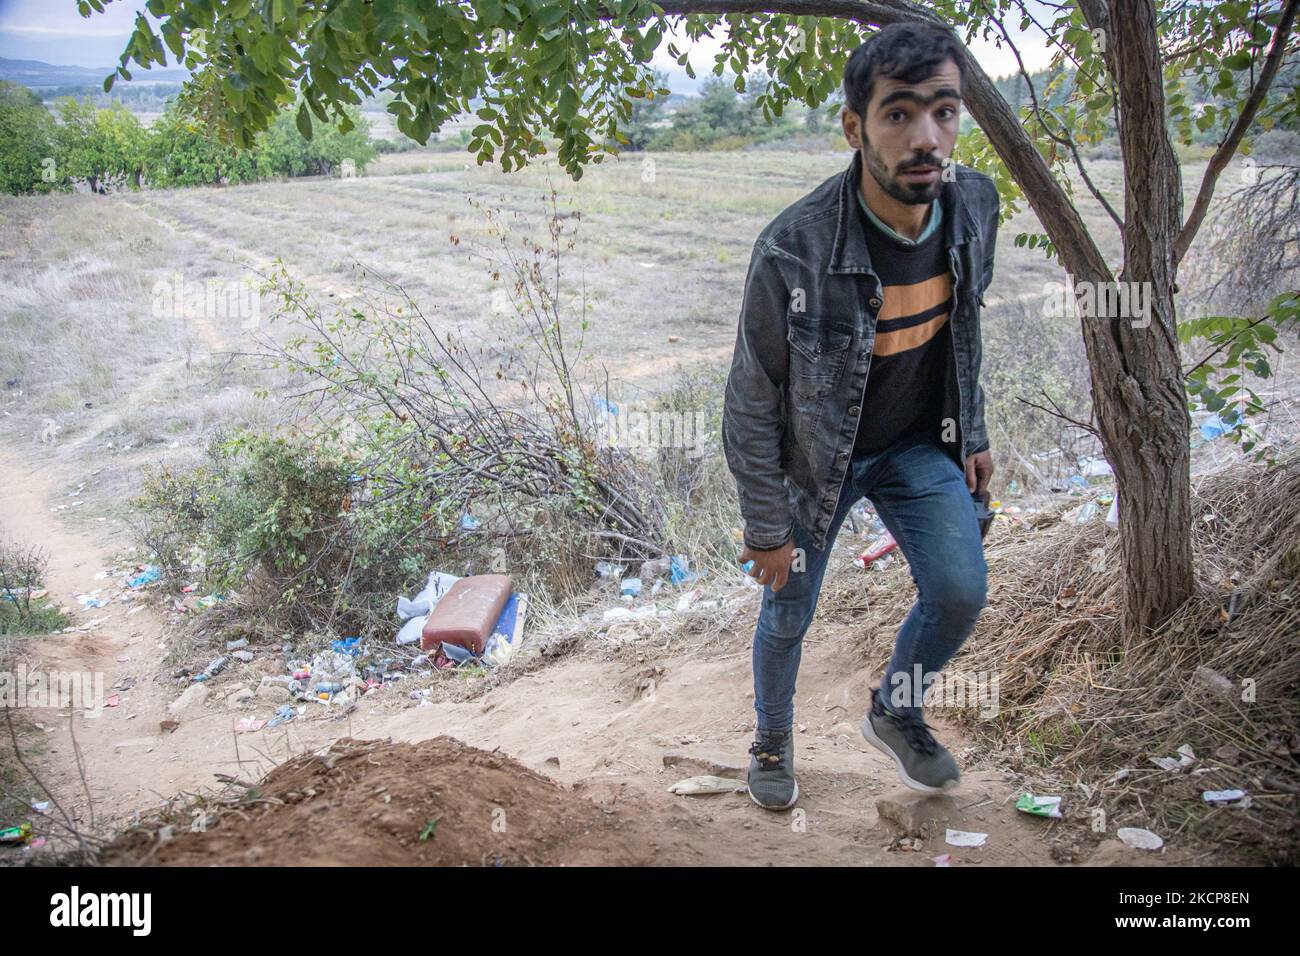 Eine Gruppe von drei jungen Asylbewerbern, die nach ihrem Versuch, die Grenzen zu überqueren, auf einen Hügel zurückkommen. Asylbewerber versuchen, die griechisch-nordmazedonischen Grenzen zu überqueren, um der 2015-2016 während der syrischen Flüchtlingskrise berühmten Balkanroute zu folgen, von Idomeni, Griechenland, nach Gevgelija, Nord-Mazedonien, den Bahnschienen und dem Bahnhof folgend, um dann Mittel- und Nordeuropa zu erreichen. Flüchtlinge und Migranten werden auf den Feldern auf der griechischen Seite gesehen, vor dem Zaun, der die beiden Länder trennt, und versuchen, die Grenzen zu erreichen und zu passieren. Die kleinen Gruppen sind meist männlich Stockfoto